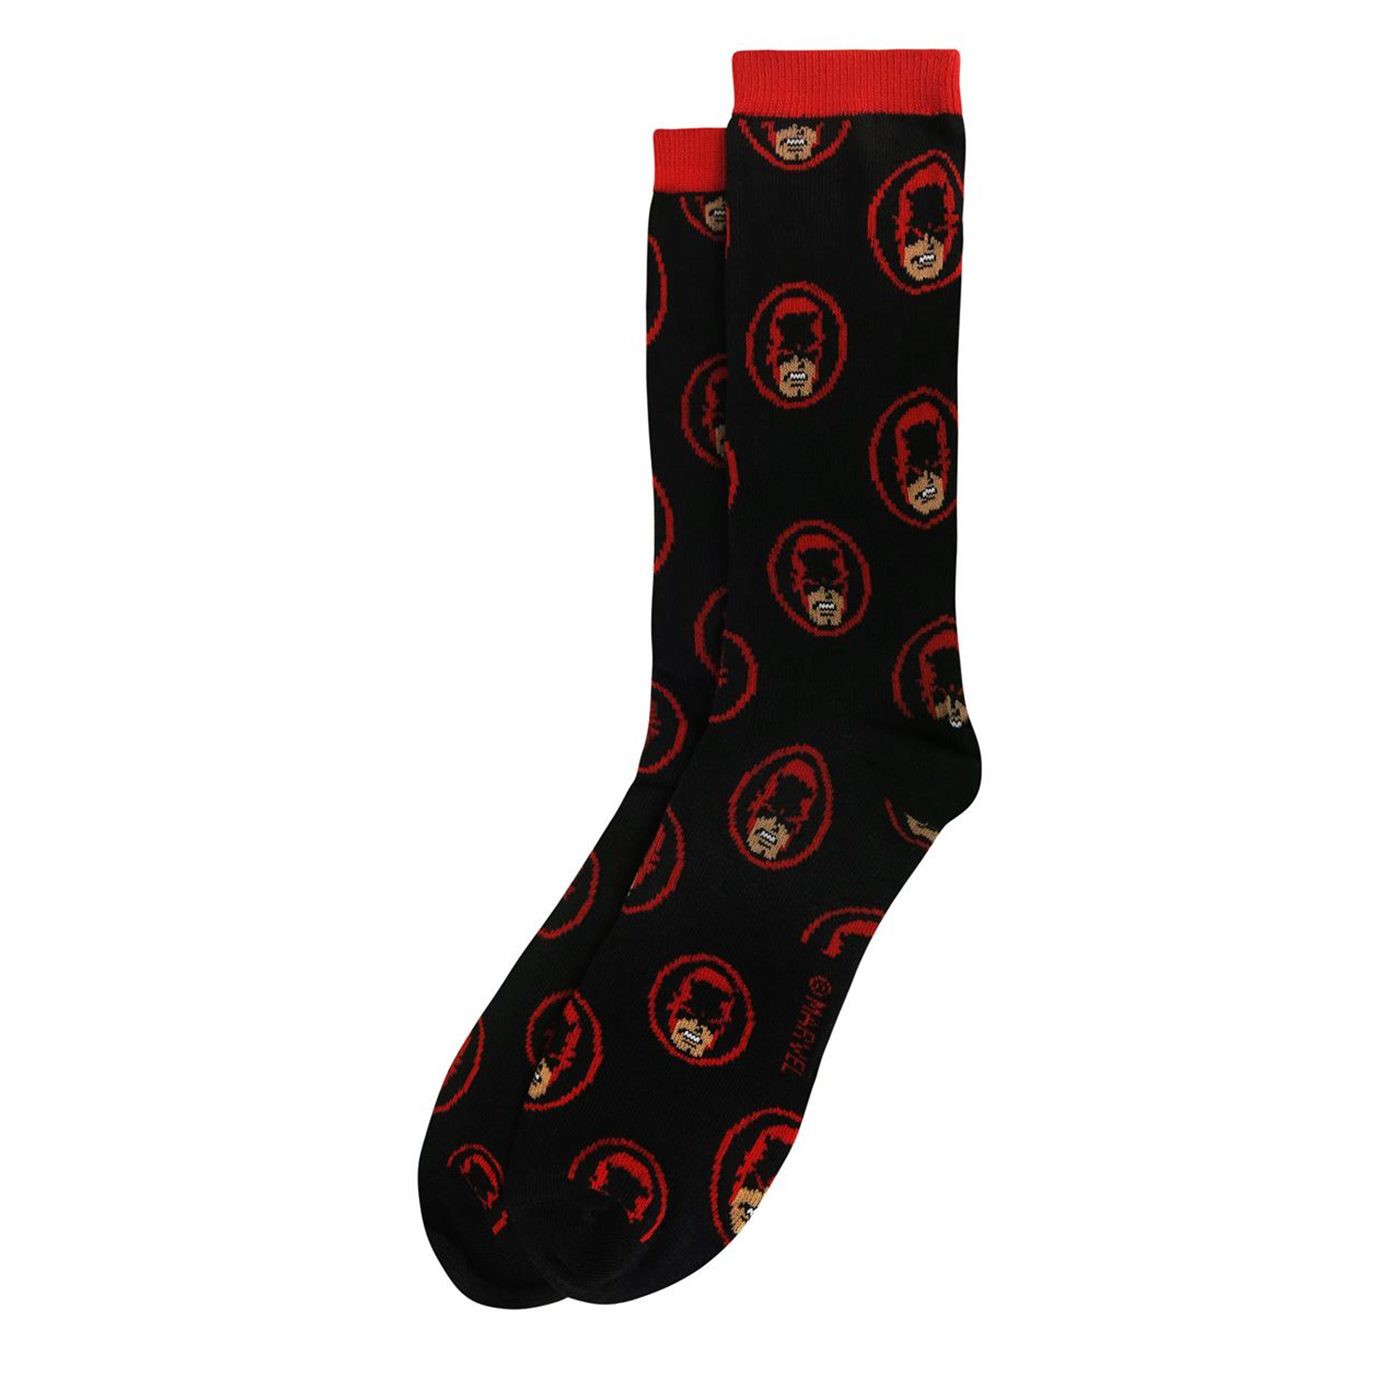 Daredevil Heads All-Over Print Crew Socks